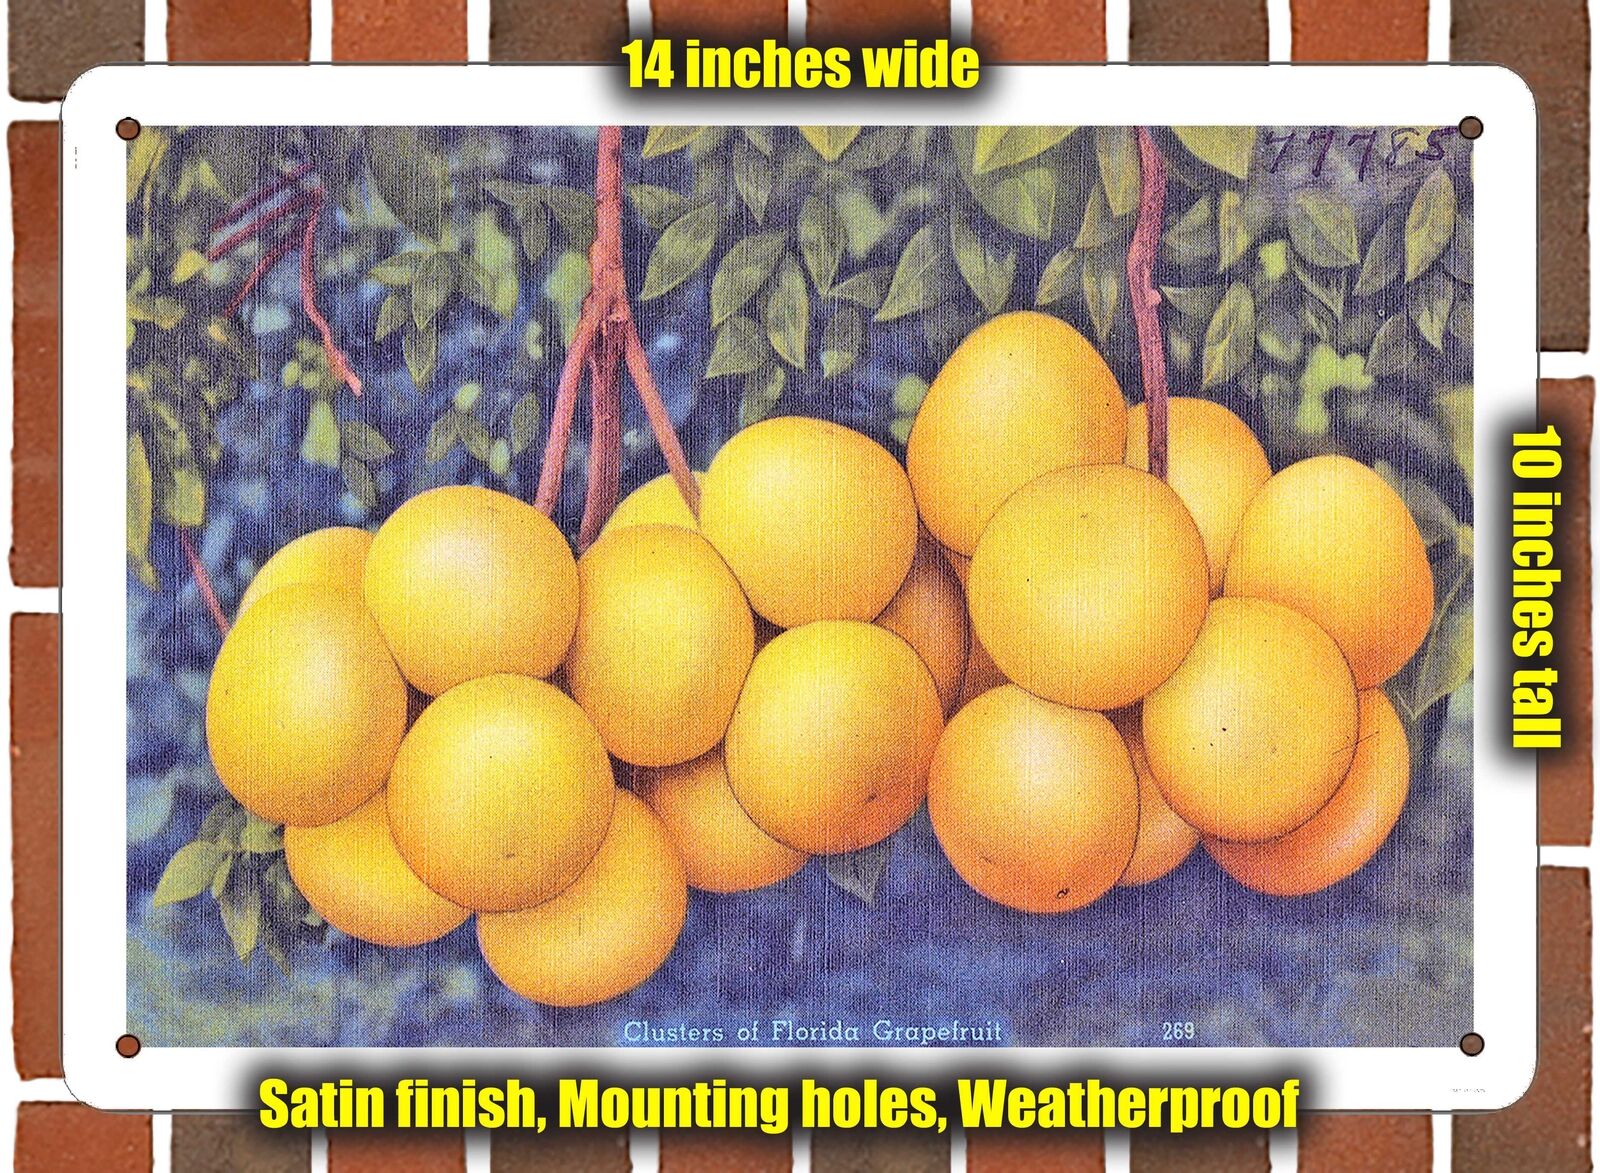 METAL SIGN - Florida Postcard - Clusters of Florida Grapefruit